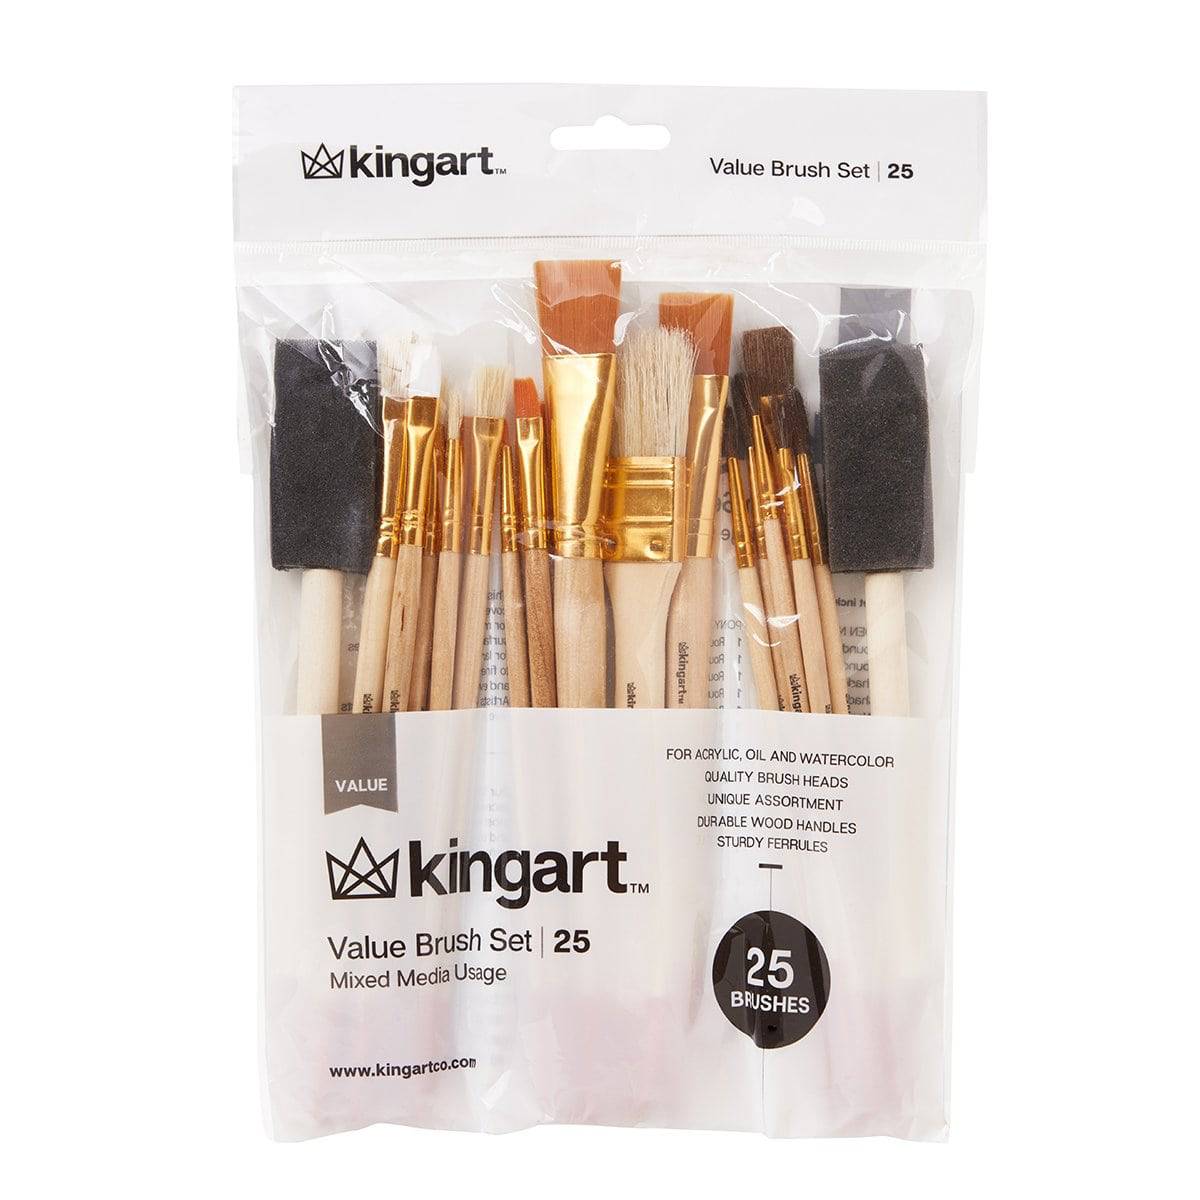 KINGART® Watercolor Pan Set, 36 Unique Colors & Paint Brush